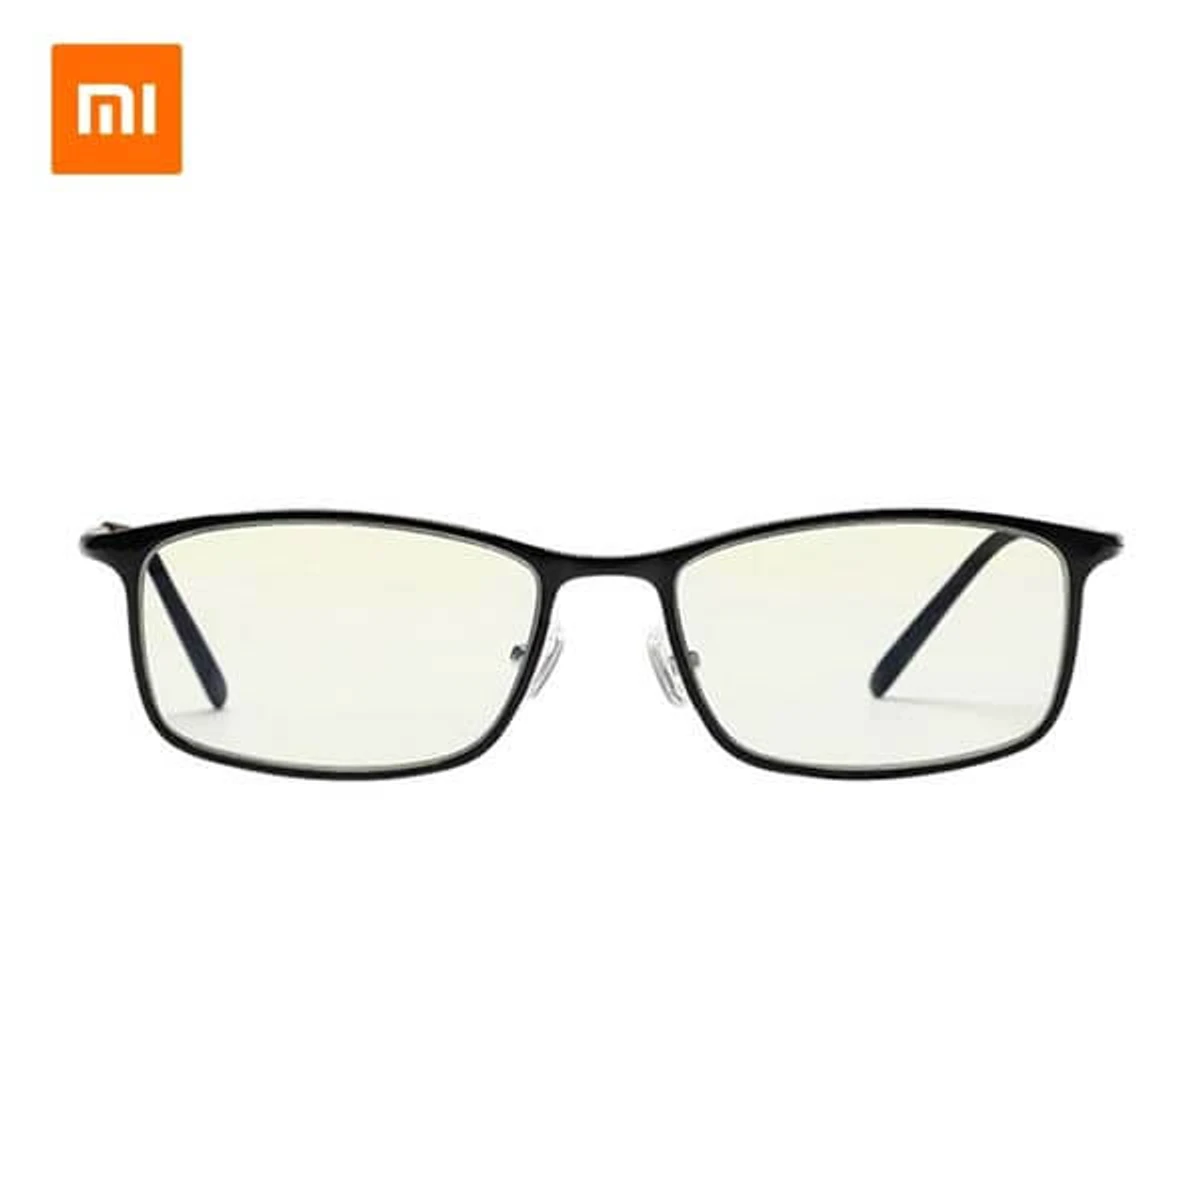 Xiaomi Mi Computer glasses Goggles Square